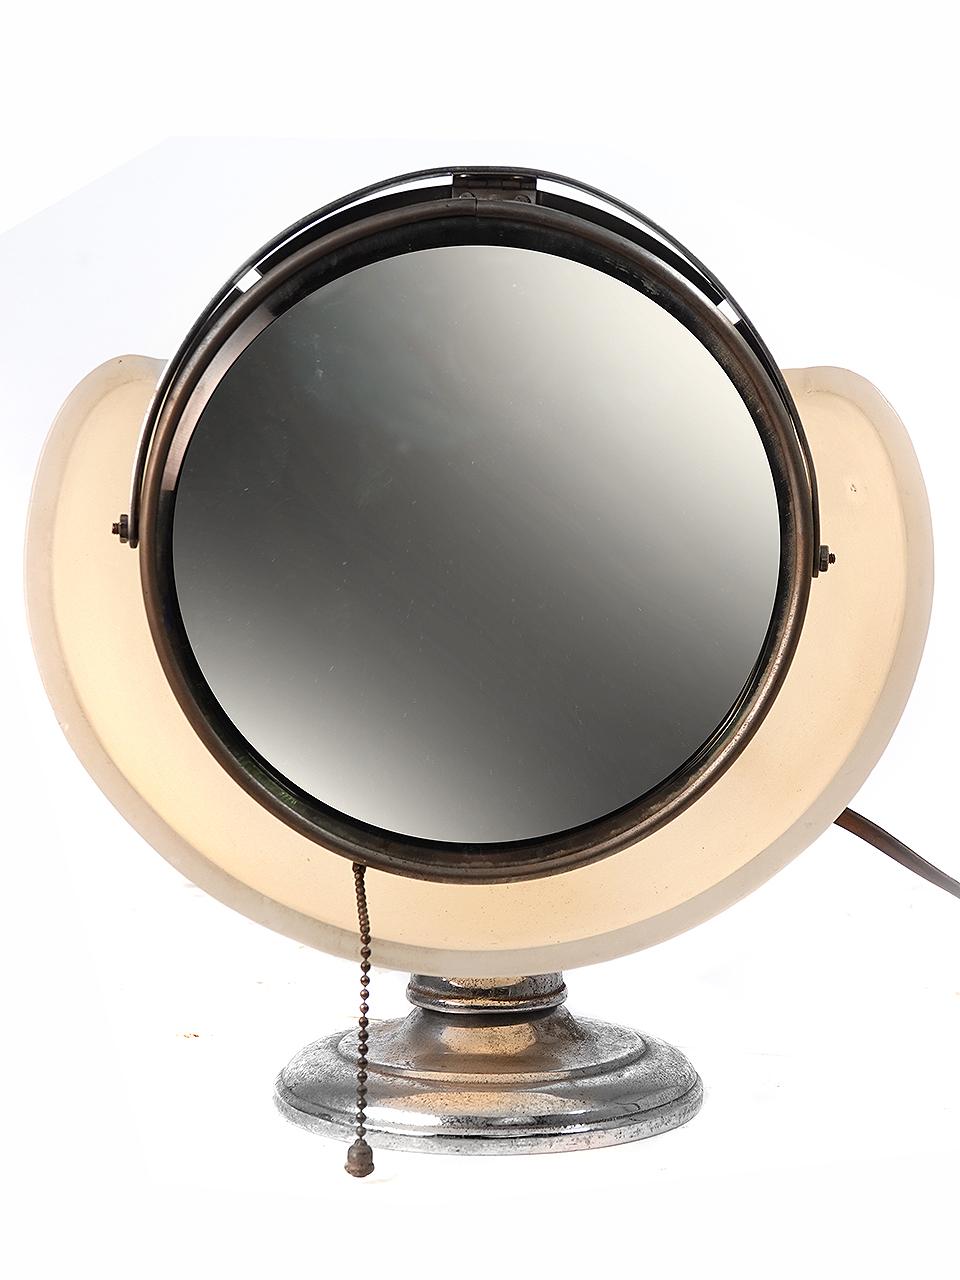 Il s'agit d'un rare miroir de maquillage Lapeer. On parle parfois de lampe à nuages. Le miroir rond articulé s'appuie sur un réflecteur de lampe en verre de lait. Il émet une ombre parfaite et une lumière uniforme. Il s'agit d'un accessoire parfait